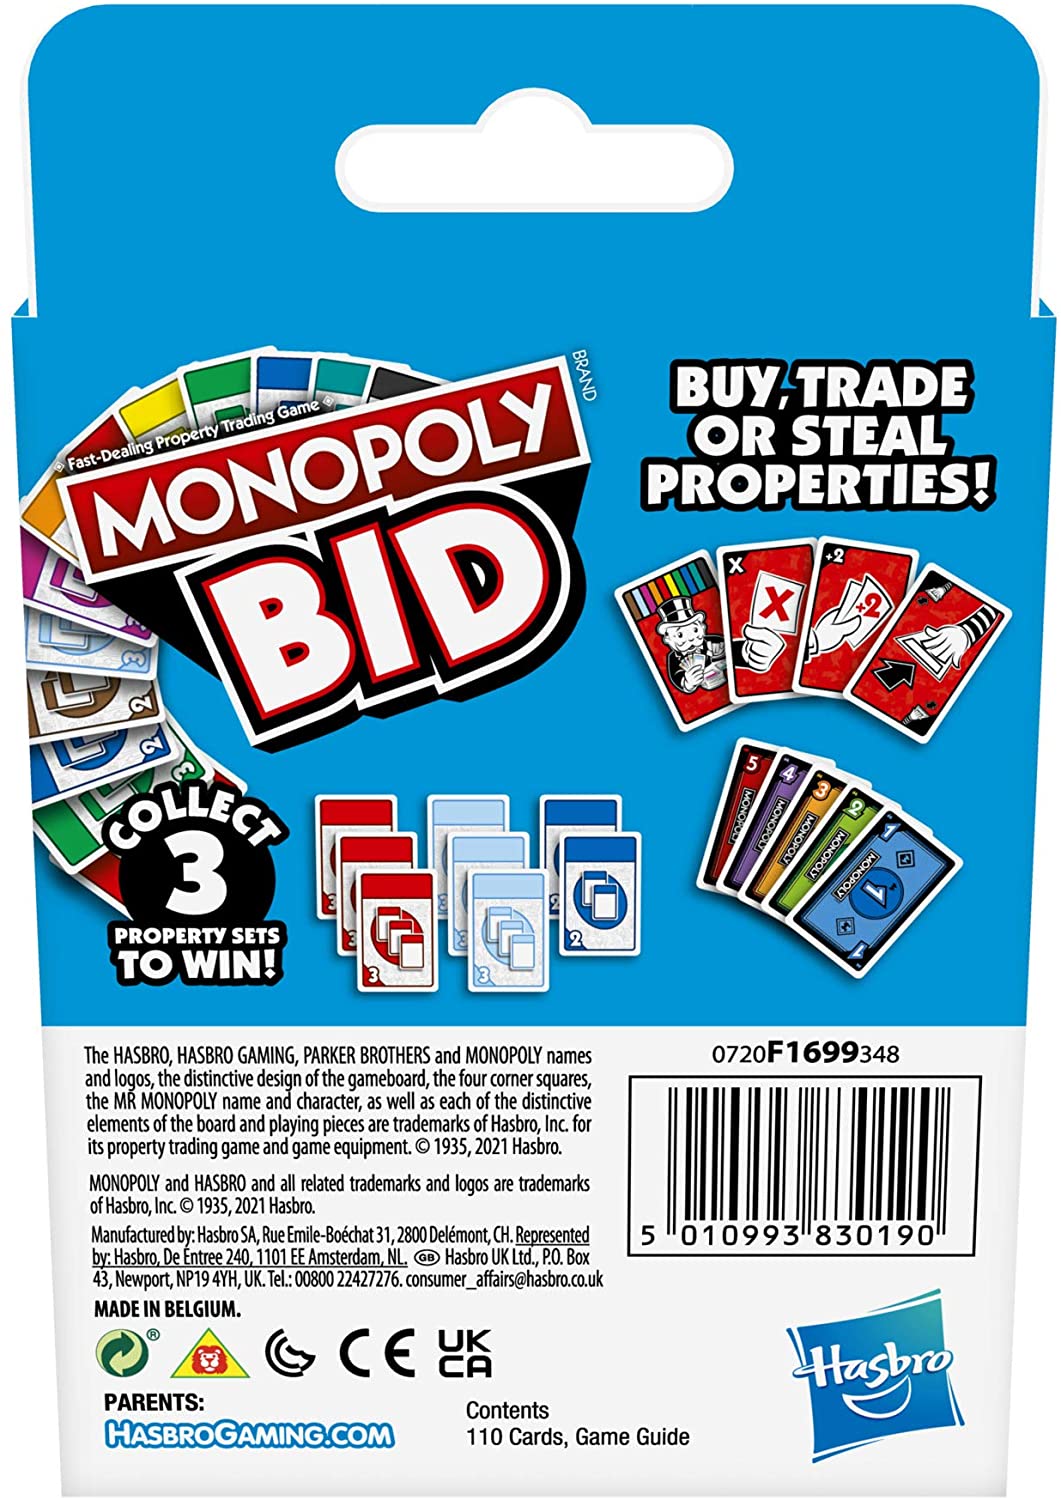 Monopoly-biedspel, snel te spelen kaartspel voor 4 spelers Spel voor gezinnen en kinderen van 7 jaar en ouder